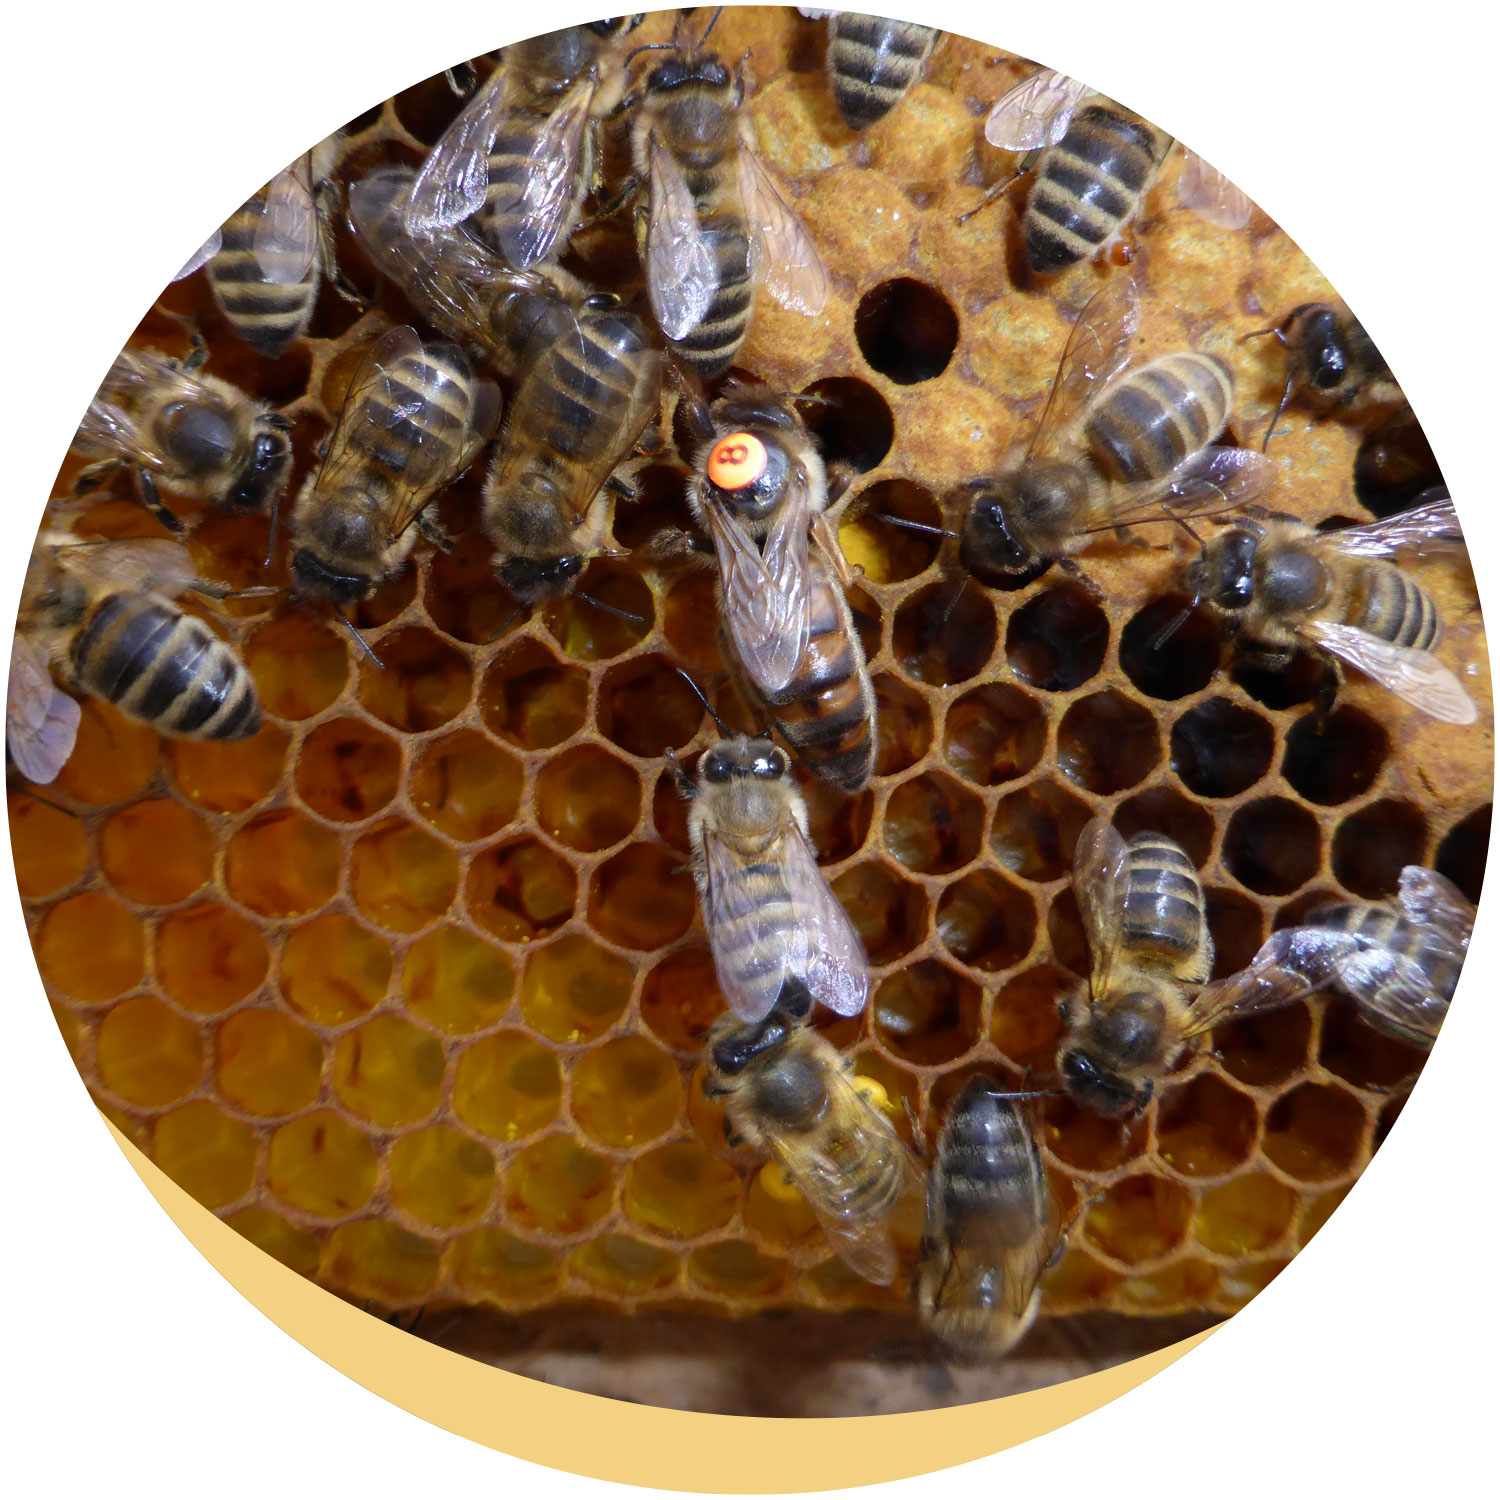 Eifel-Biene von Friedrich Bleckmann – die Imkerei am Mühlenberg: Honig kaufen, Bienenköniginnen erwerben, Imker werden!